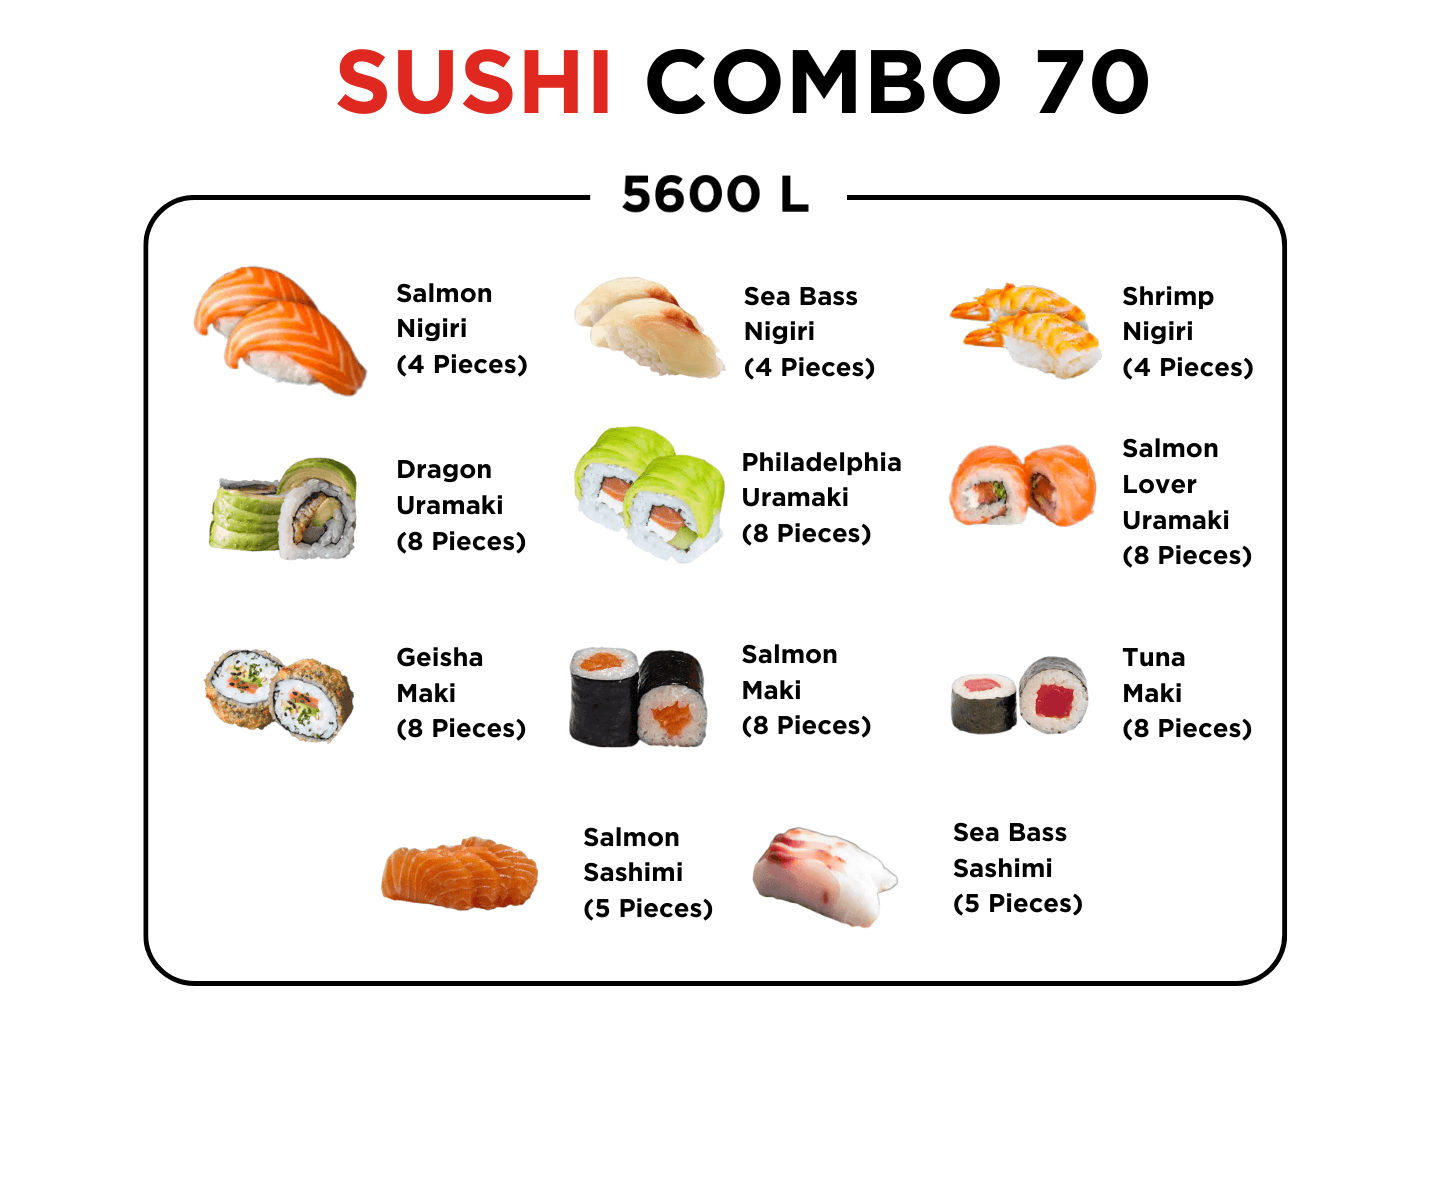 Sushi Combo 70